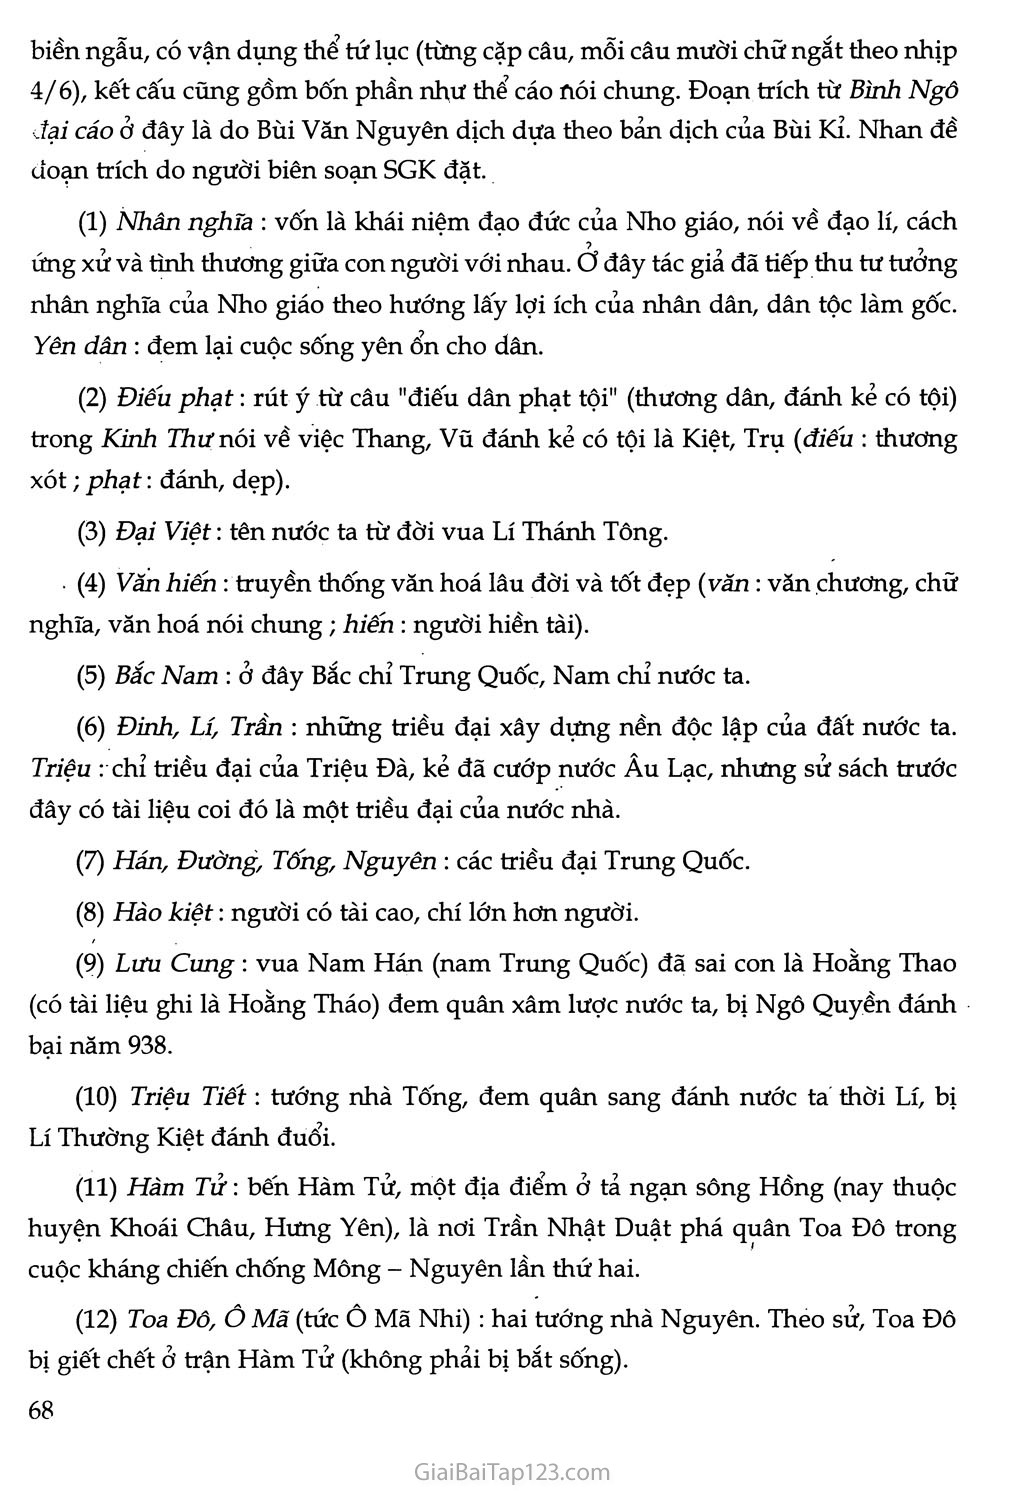 Nước Đại Việt ta (trích Bình Ngô đại cáo) trang 4